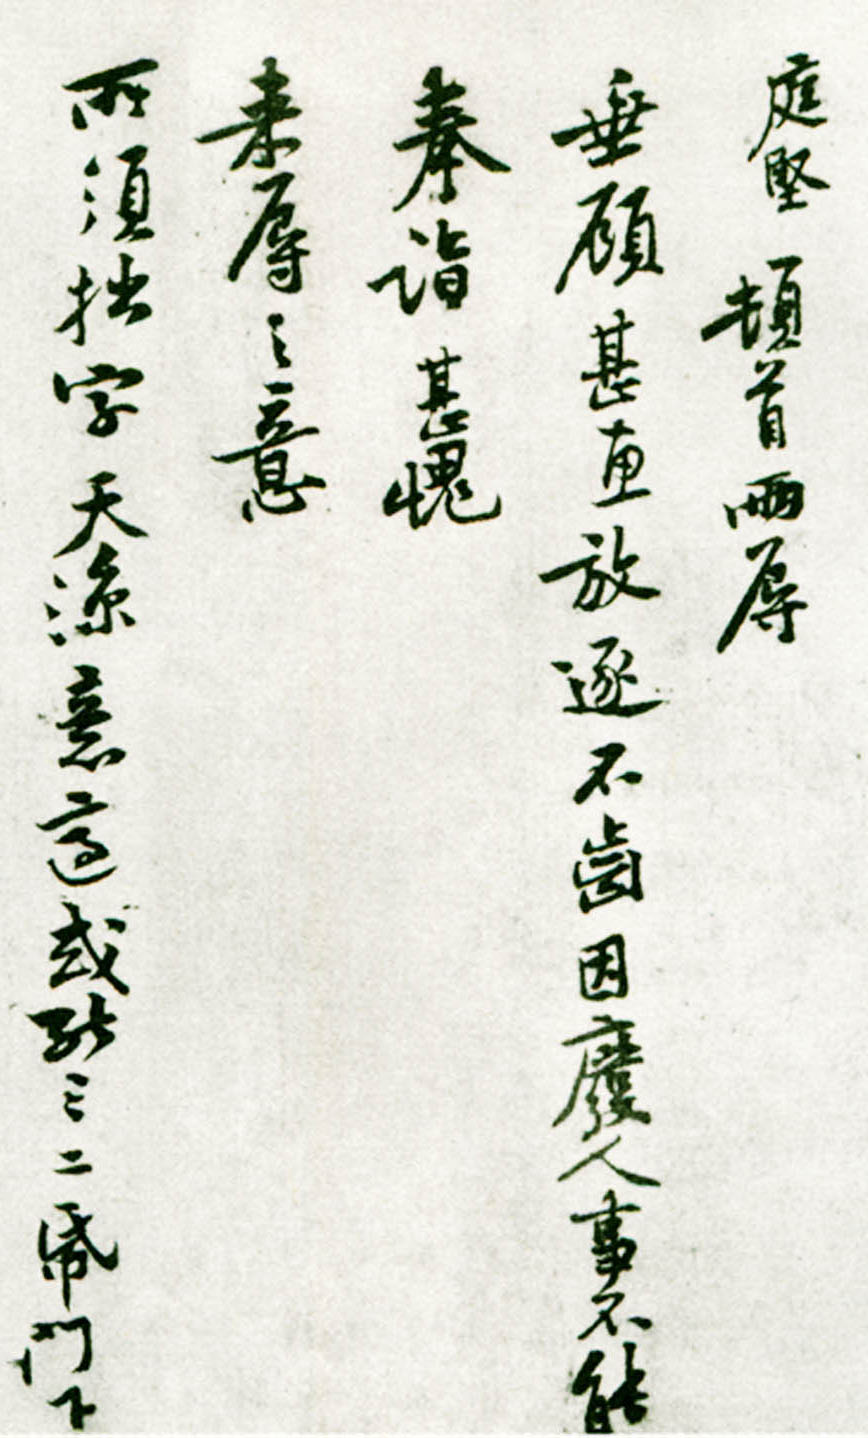 黄庭坚《齐君帖》-台北故宫博物院藏(图2)